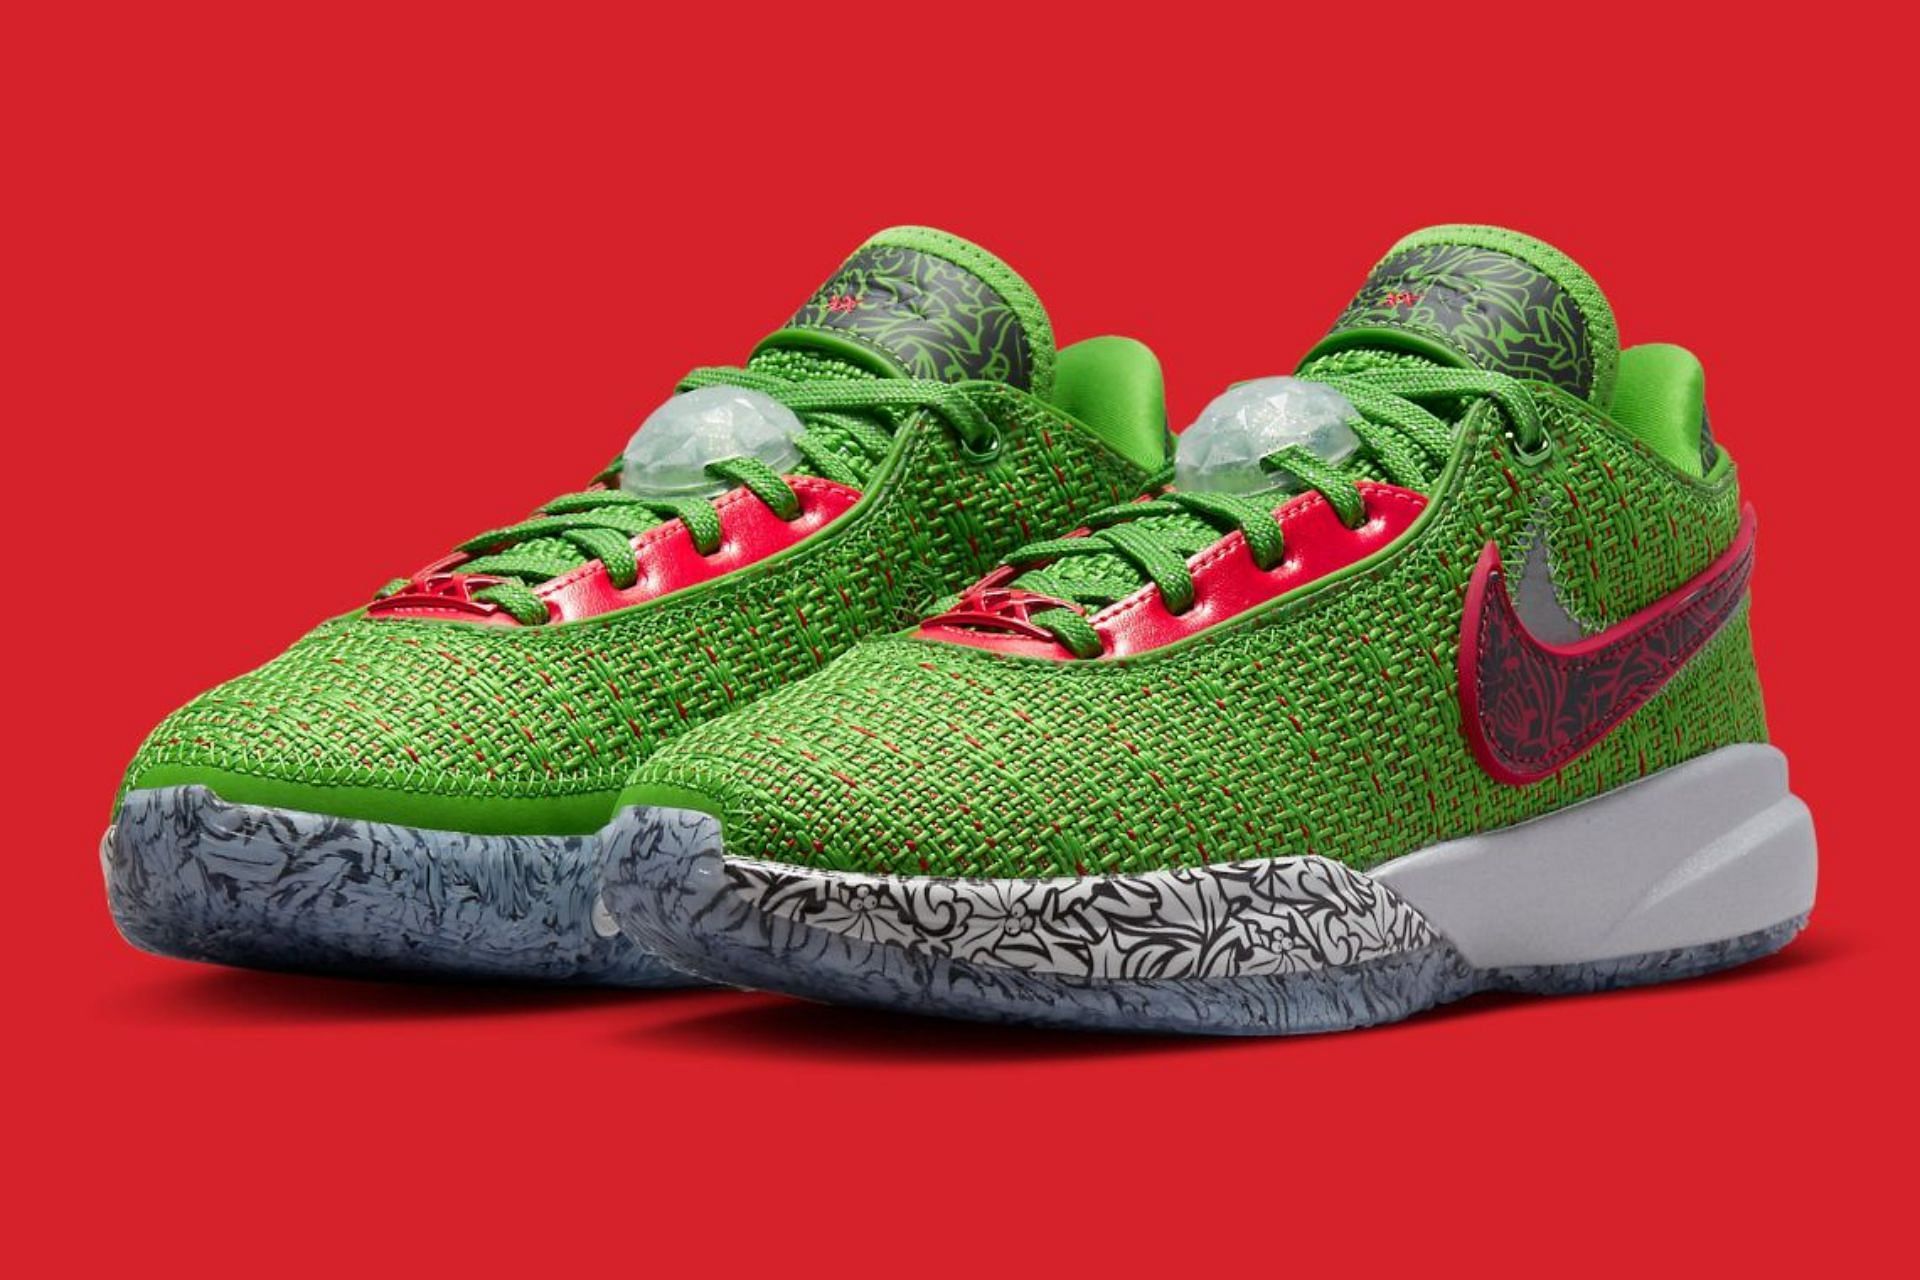 Nike LeBron 20 Christmas colorway (Image via Nike)